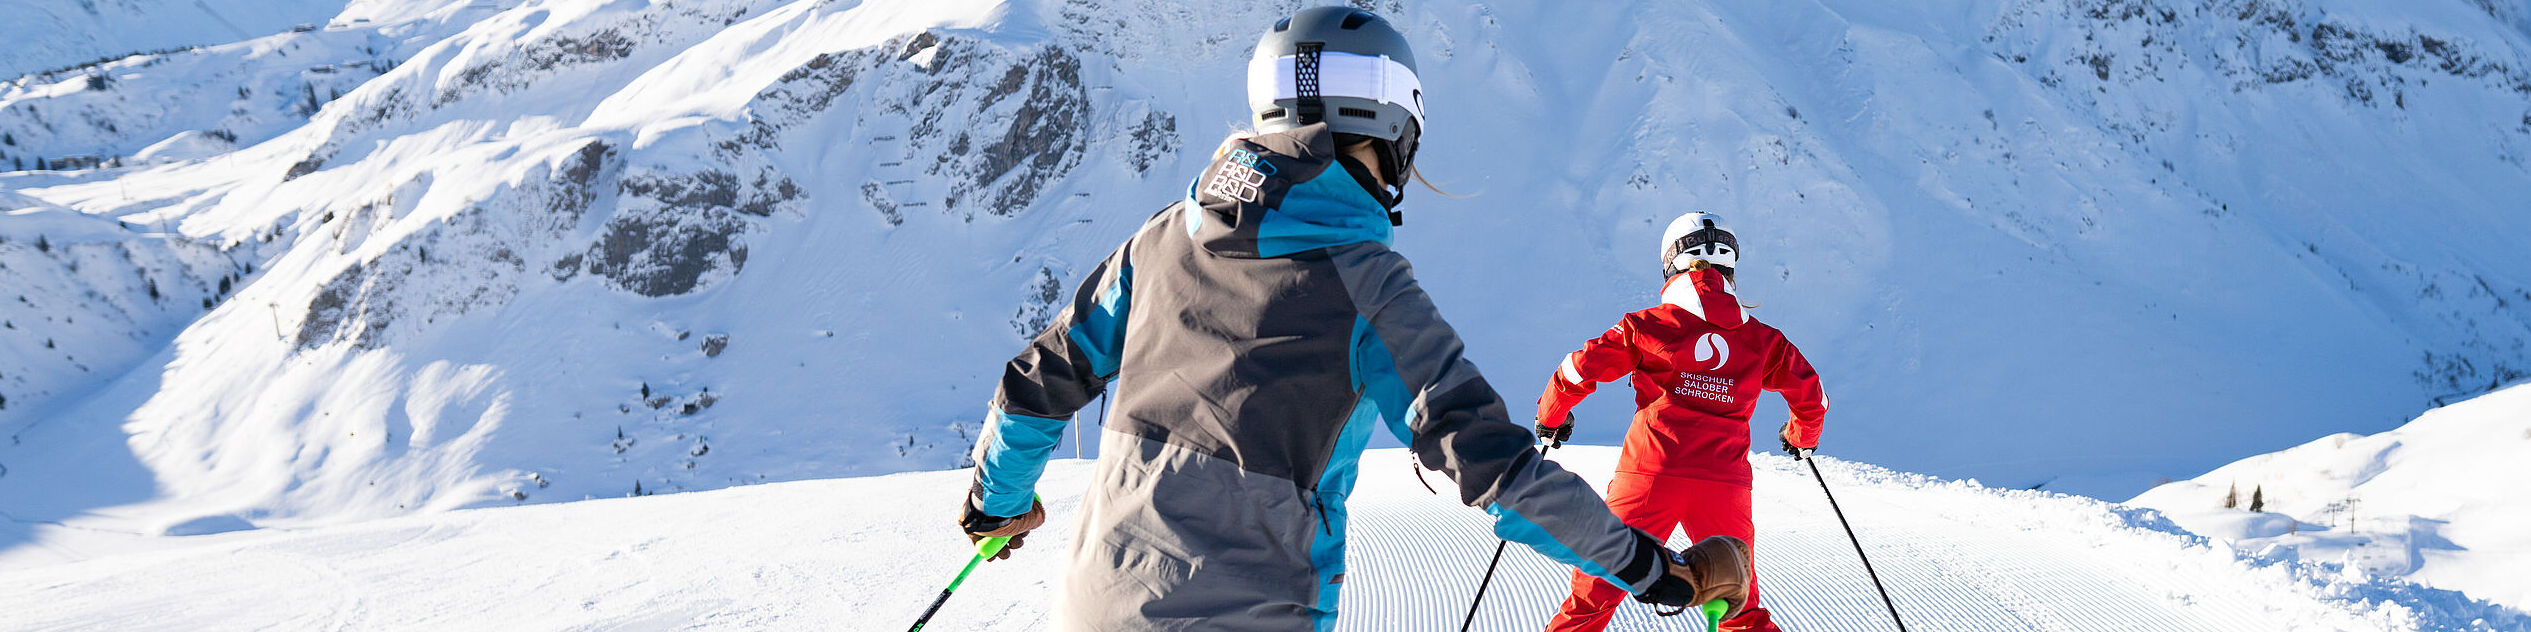 Eine Skischülerin fährt ihrer Skilehrerin auf der Piste nach